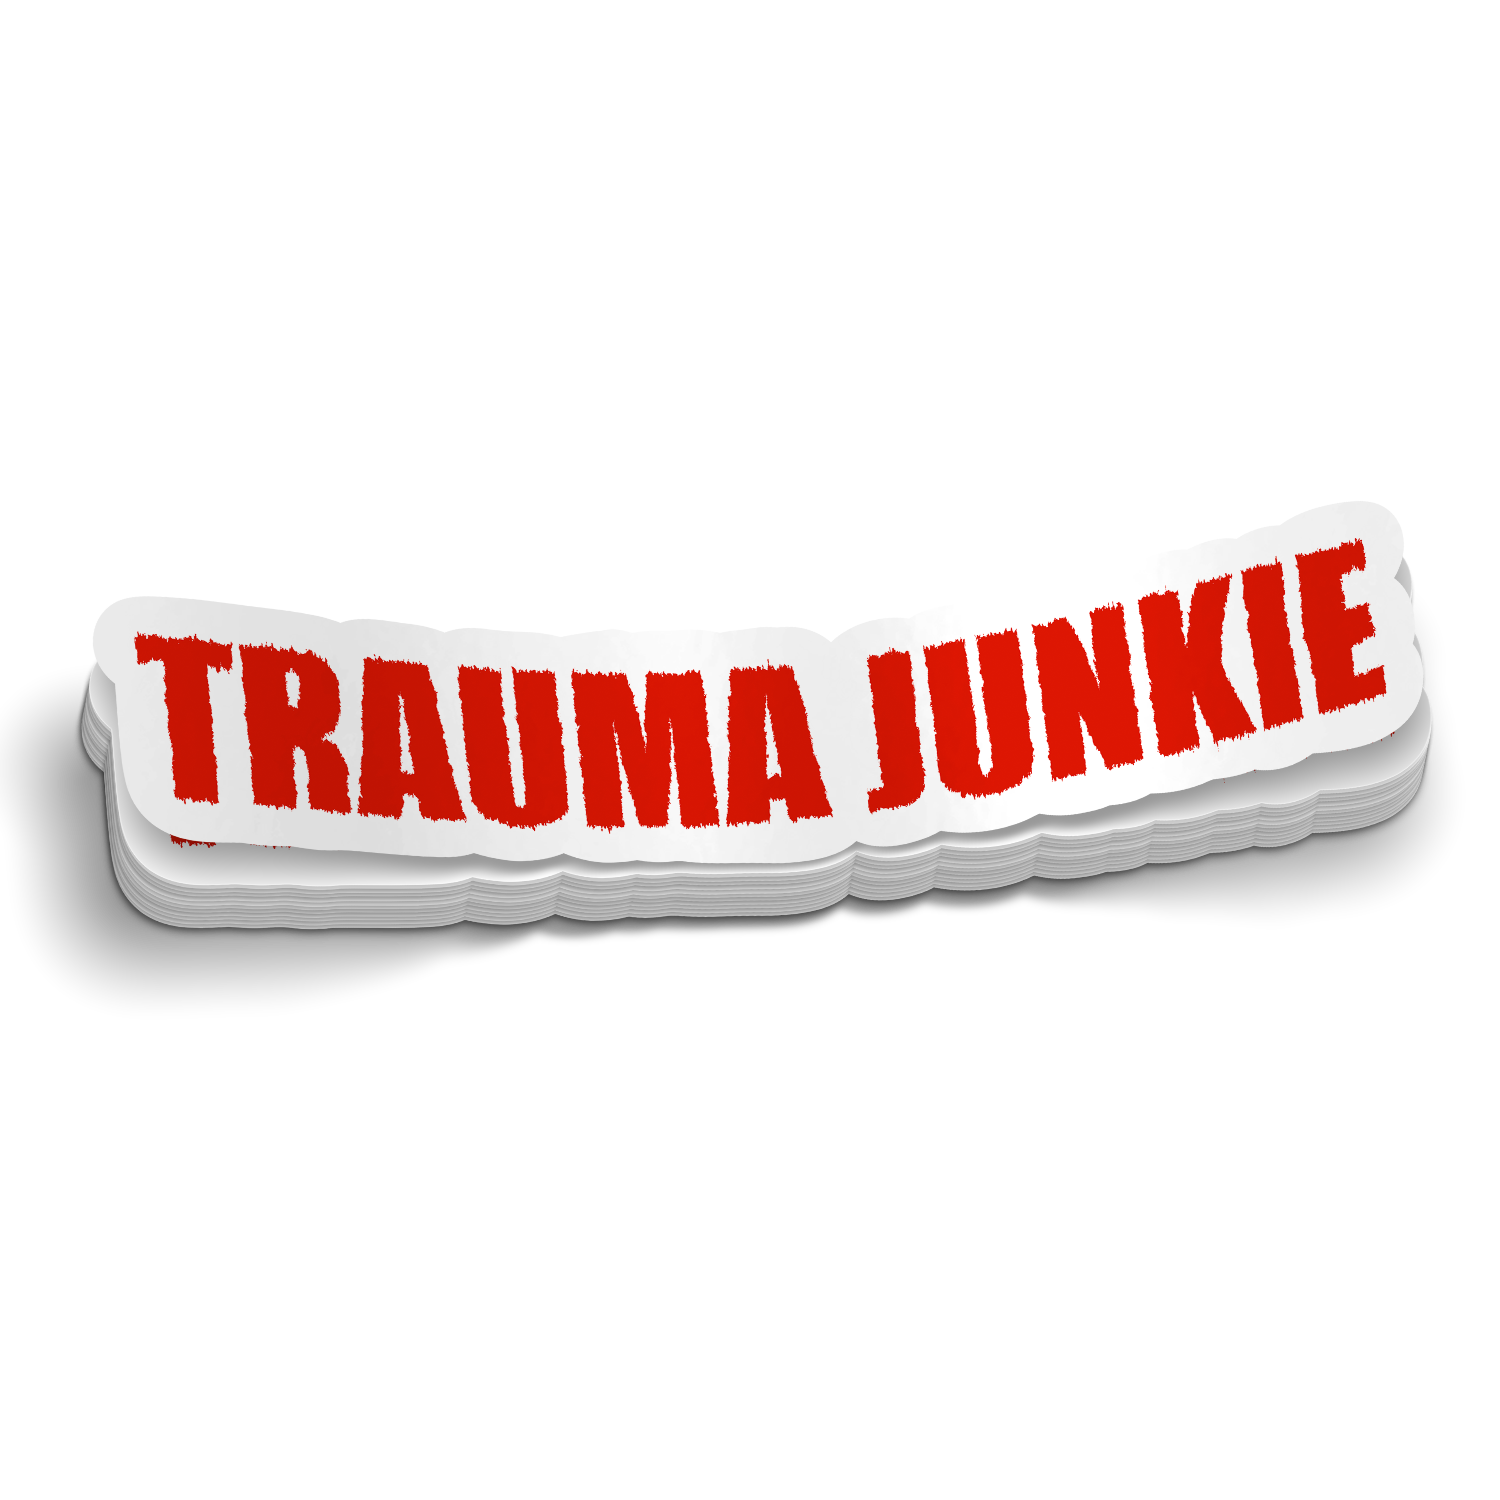 Trauma Junkie Sticker